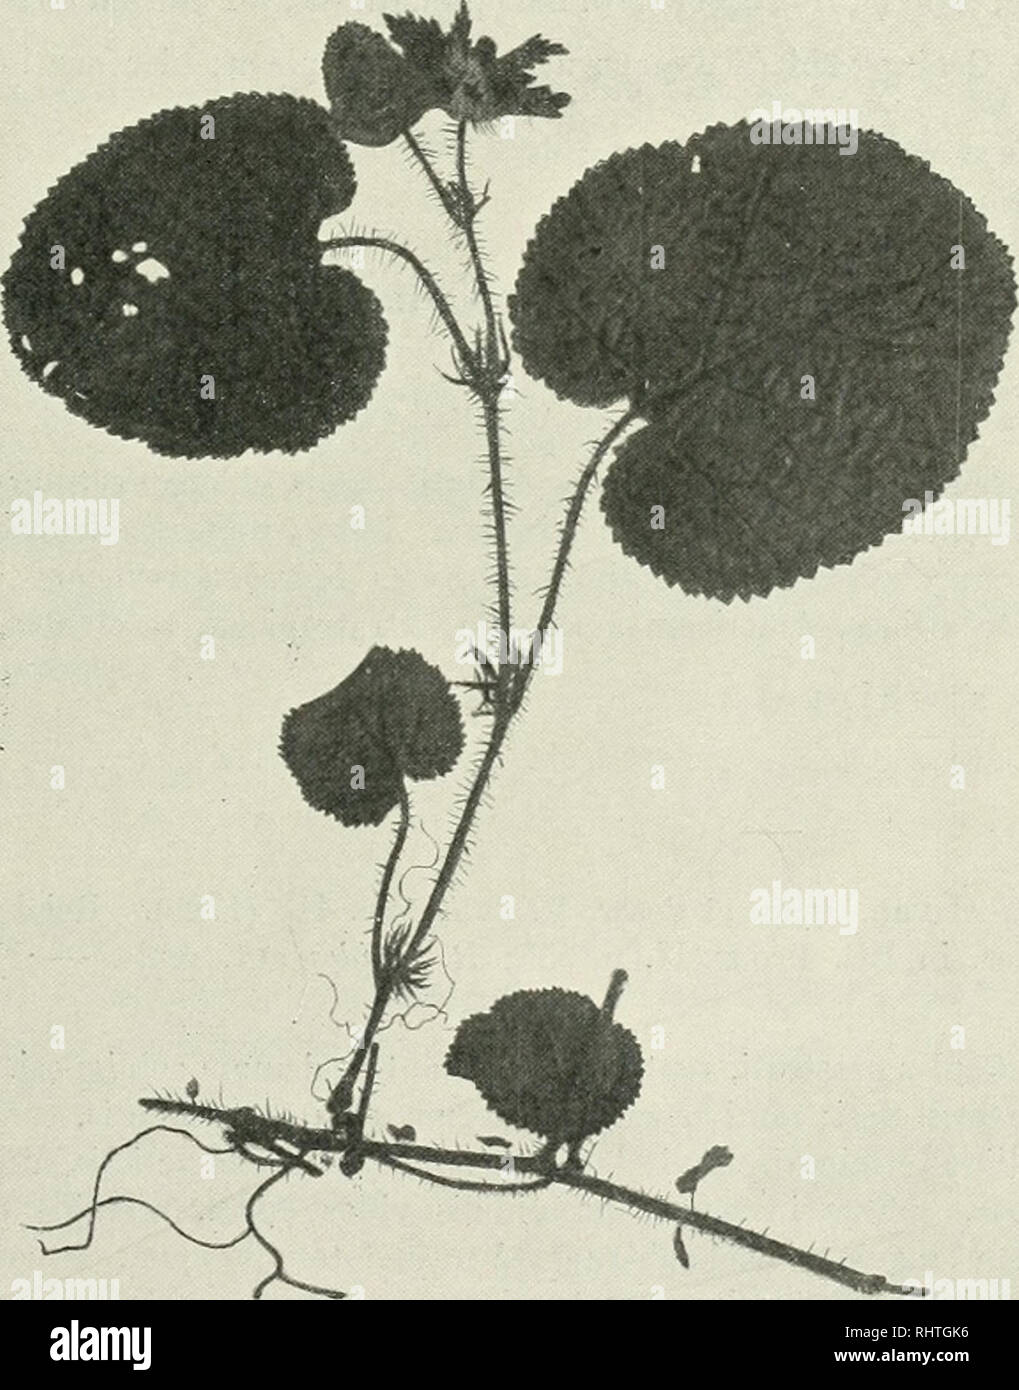 . Bibliotheca botanica. Plants. - 21 - Var. suffruticosus: Gaules irutescenteH lignosi; piitamea vix rugulosum. Folia coriacea videntur. In insula Java leg. Zollingor (exs. 2964), Im Himalaya, insbesondere in Nepal, Sikkim, Khasia, in Höhen von 2000—3000 m. Die Varietät auf Java.. Fig. 6. R. pfctinelliis Maxmw. 10. R. pectinaris n. sp. Exs. Wilson 4864. R. calycino similis, differt vero: stipulis profundins pectinato-incisis, lacinulis lanceolatis; sepalis integris, lanceolatis, intus alhido-tomentosis, in flore reflexis. Setae in caule tenuissimae, flexiles, minime aculeis similes, in calyce  Stock Photo